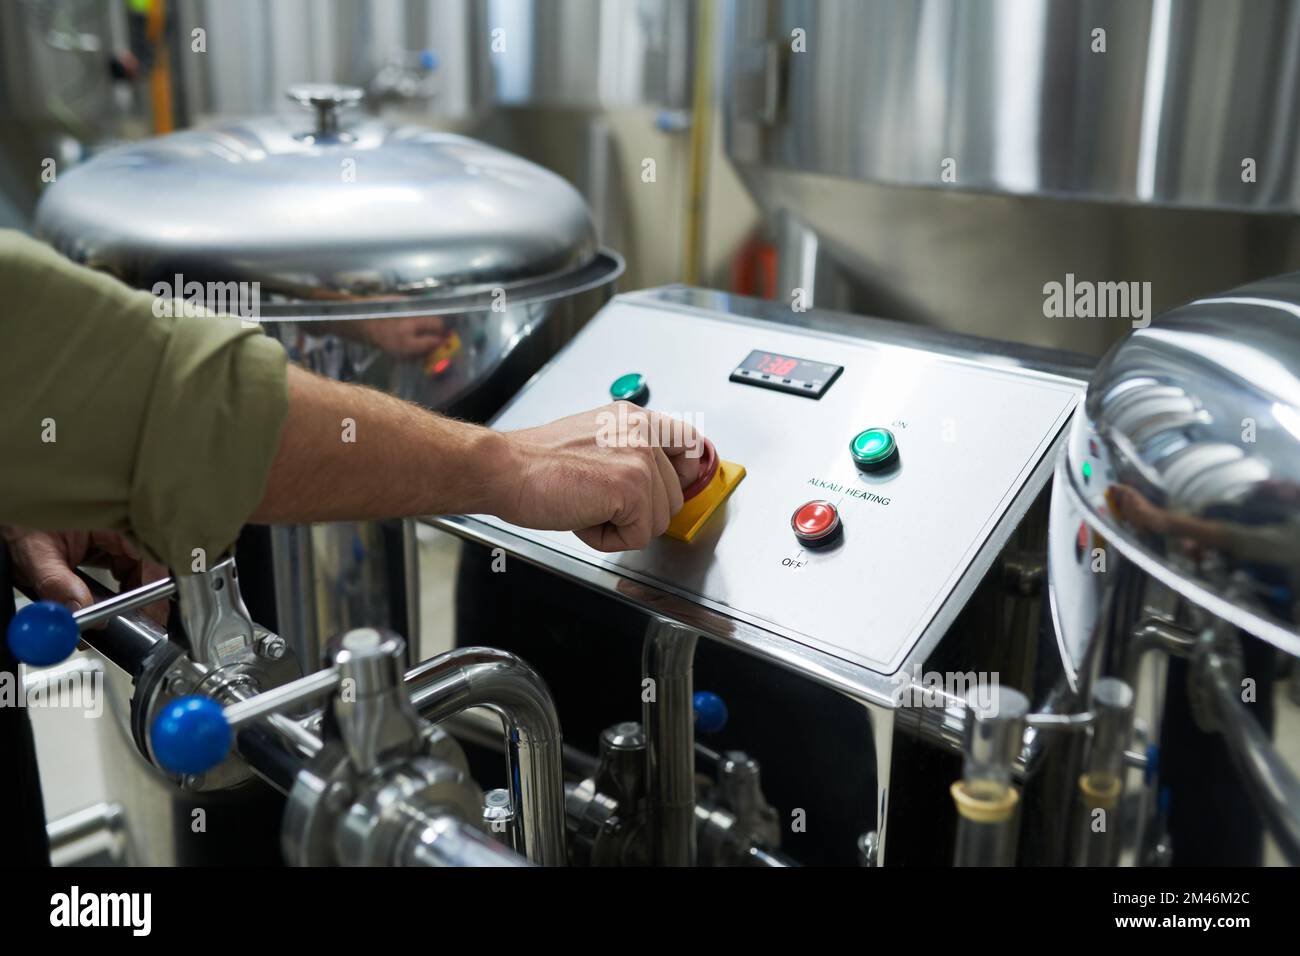 Image de gros plan du travailleur qui lance l'équipement de brasserie pour la fermentation et la maturation de la bière Banque D'Images